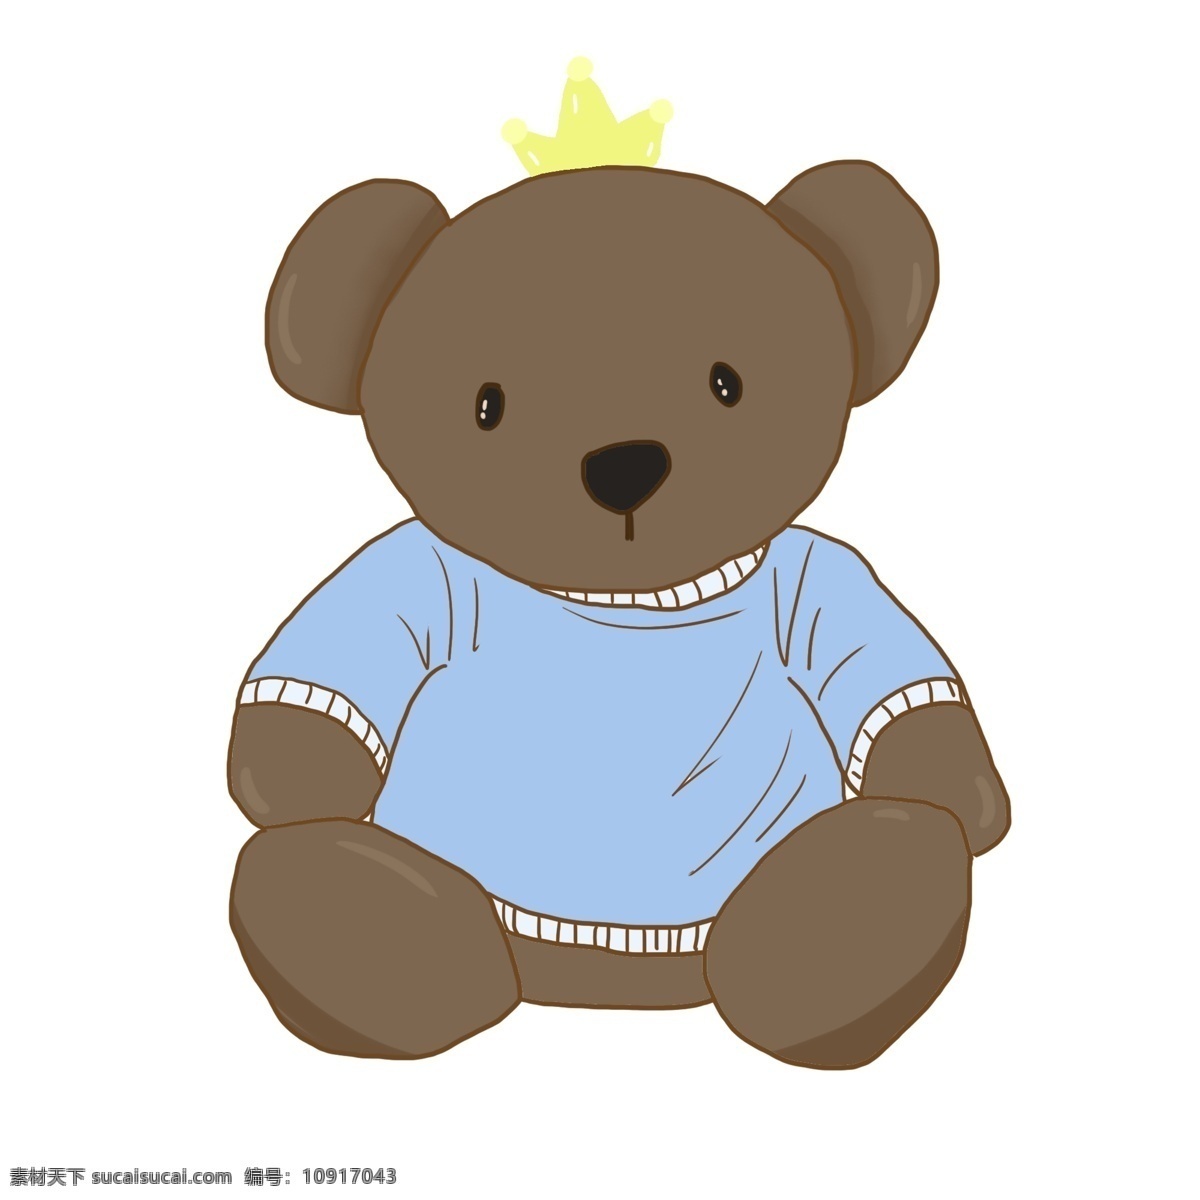 儿童节 玩具 熊 插画 玩具熊 棕色熊 玩具熊插画 儿童玩具 蓝色衣服 皇冠 戴皇冠的熊